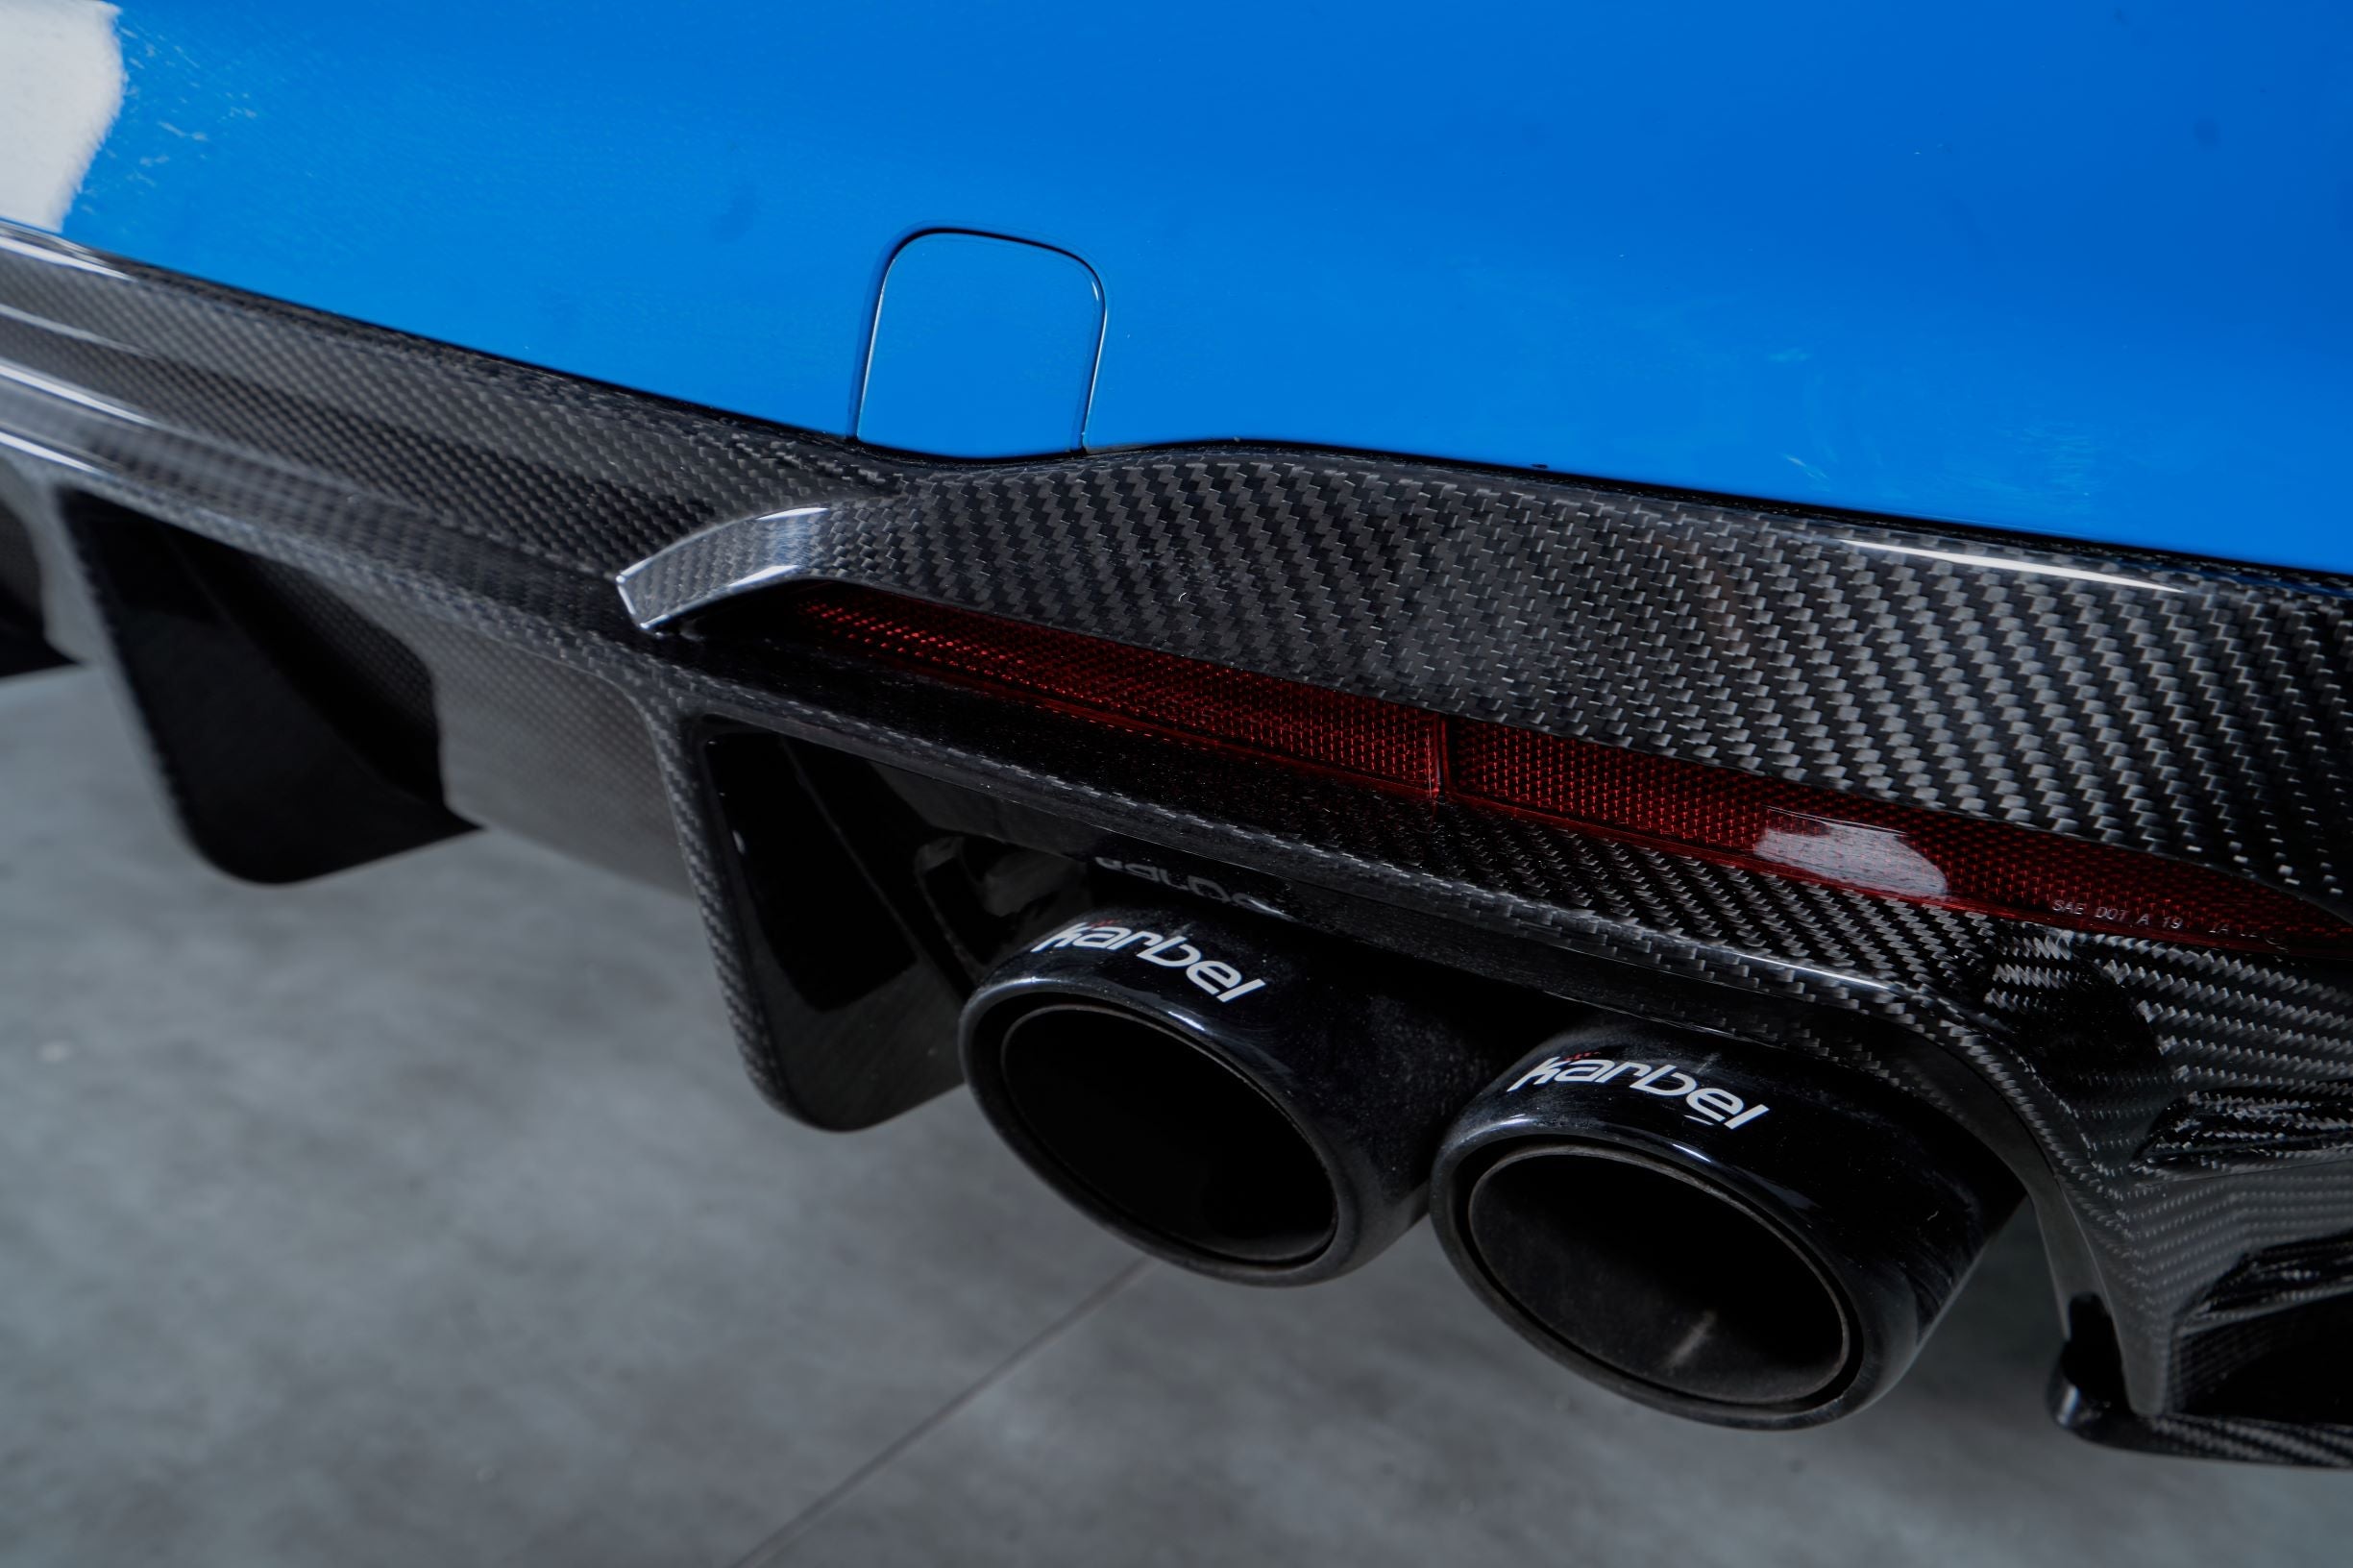 Karbel Carbon Dry Carbon Fiber Rear Diffuser Ver.1 with Brake Light for Audi S4 2020-ON B9.5